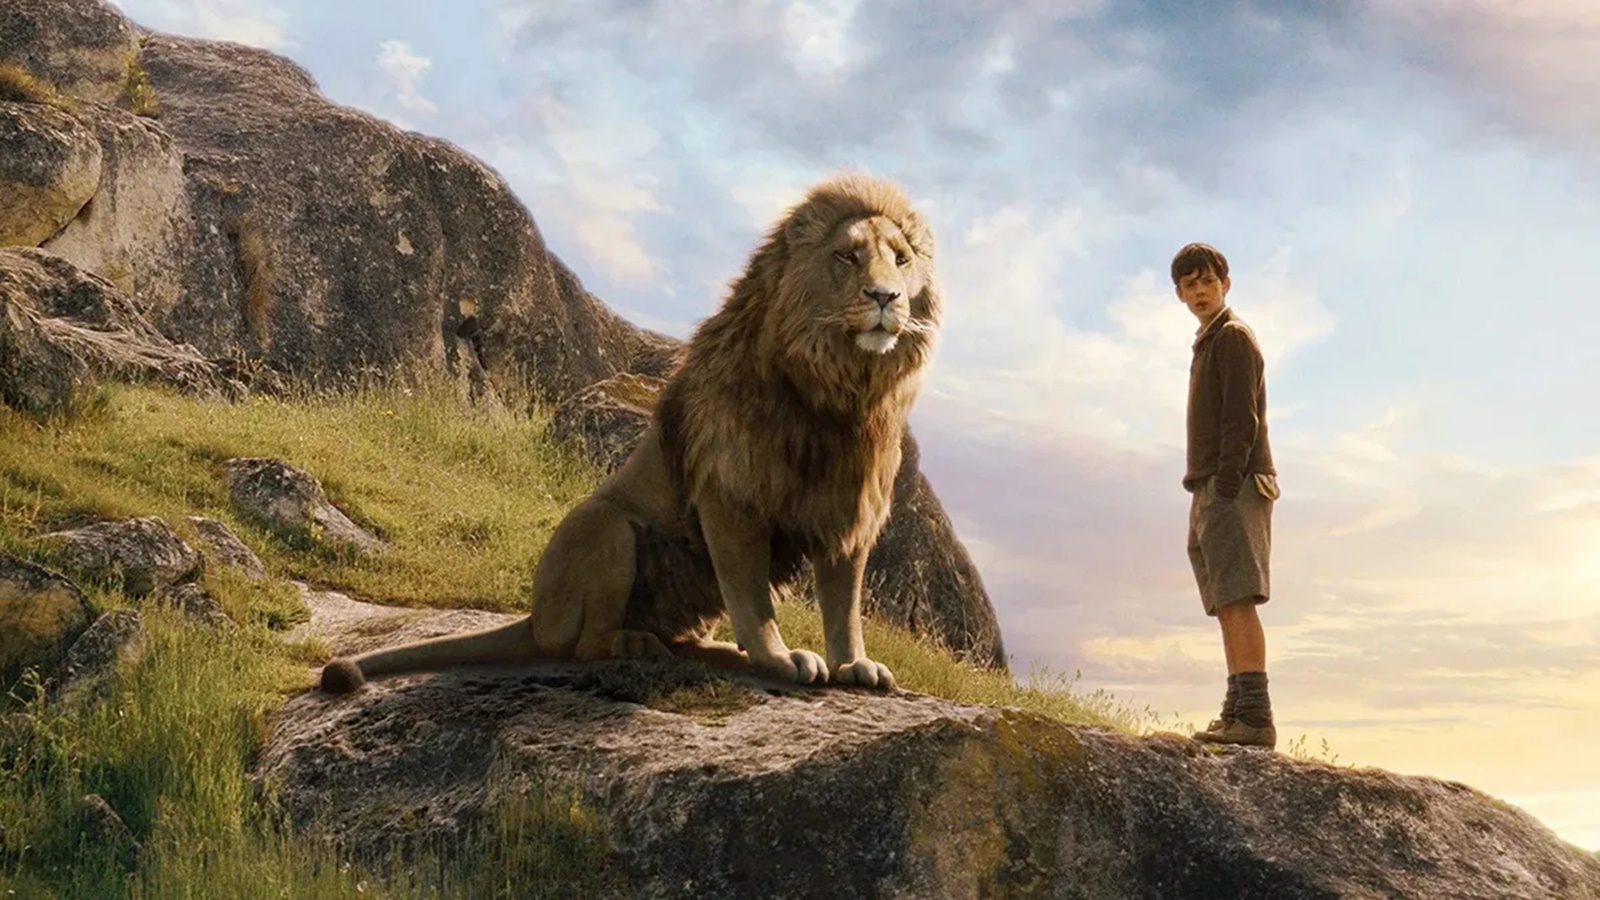 Le cronache di Narnia: Greta Gerwig si occuperà della sceneggiatura e della regia di due film